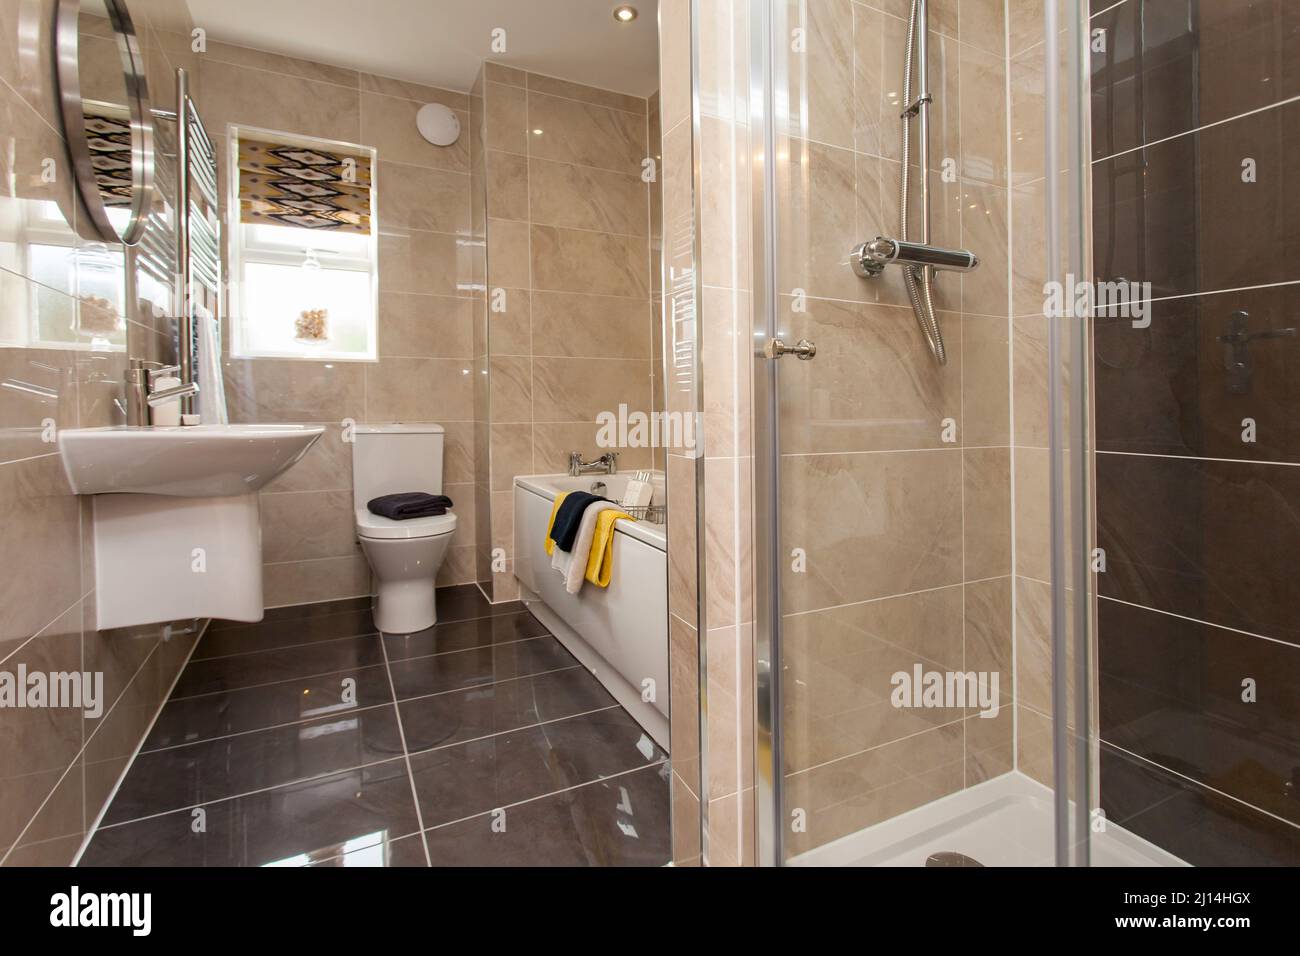 Modernes Badezimmer mit Toilette, Duschkabine, Waschbecken, Badewanne, überall gefliest. Stockfoto